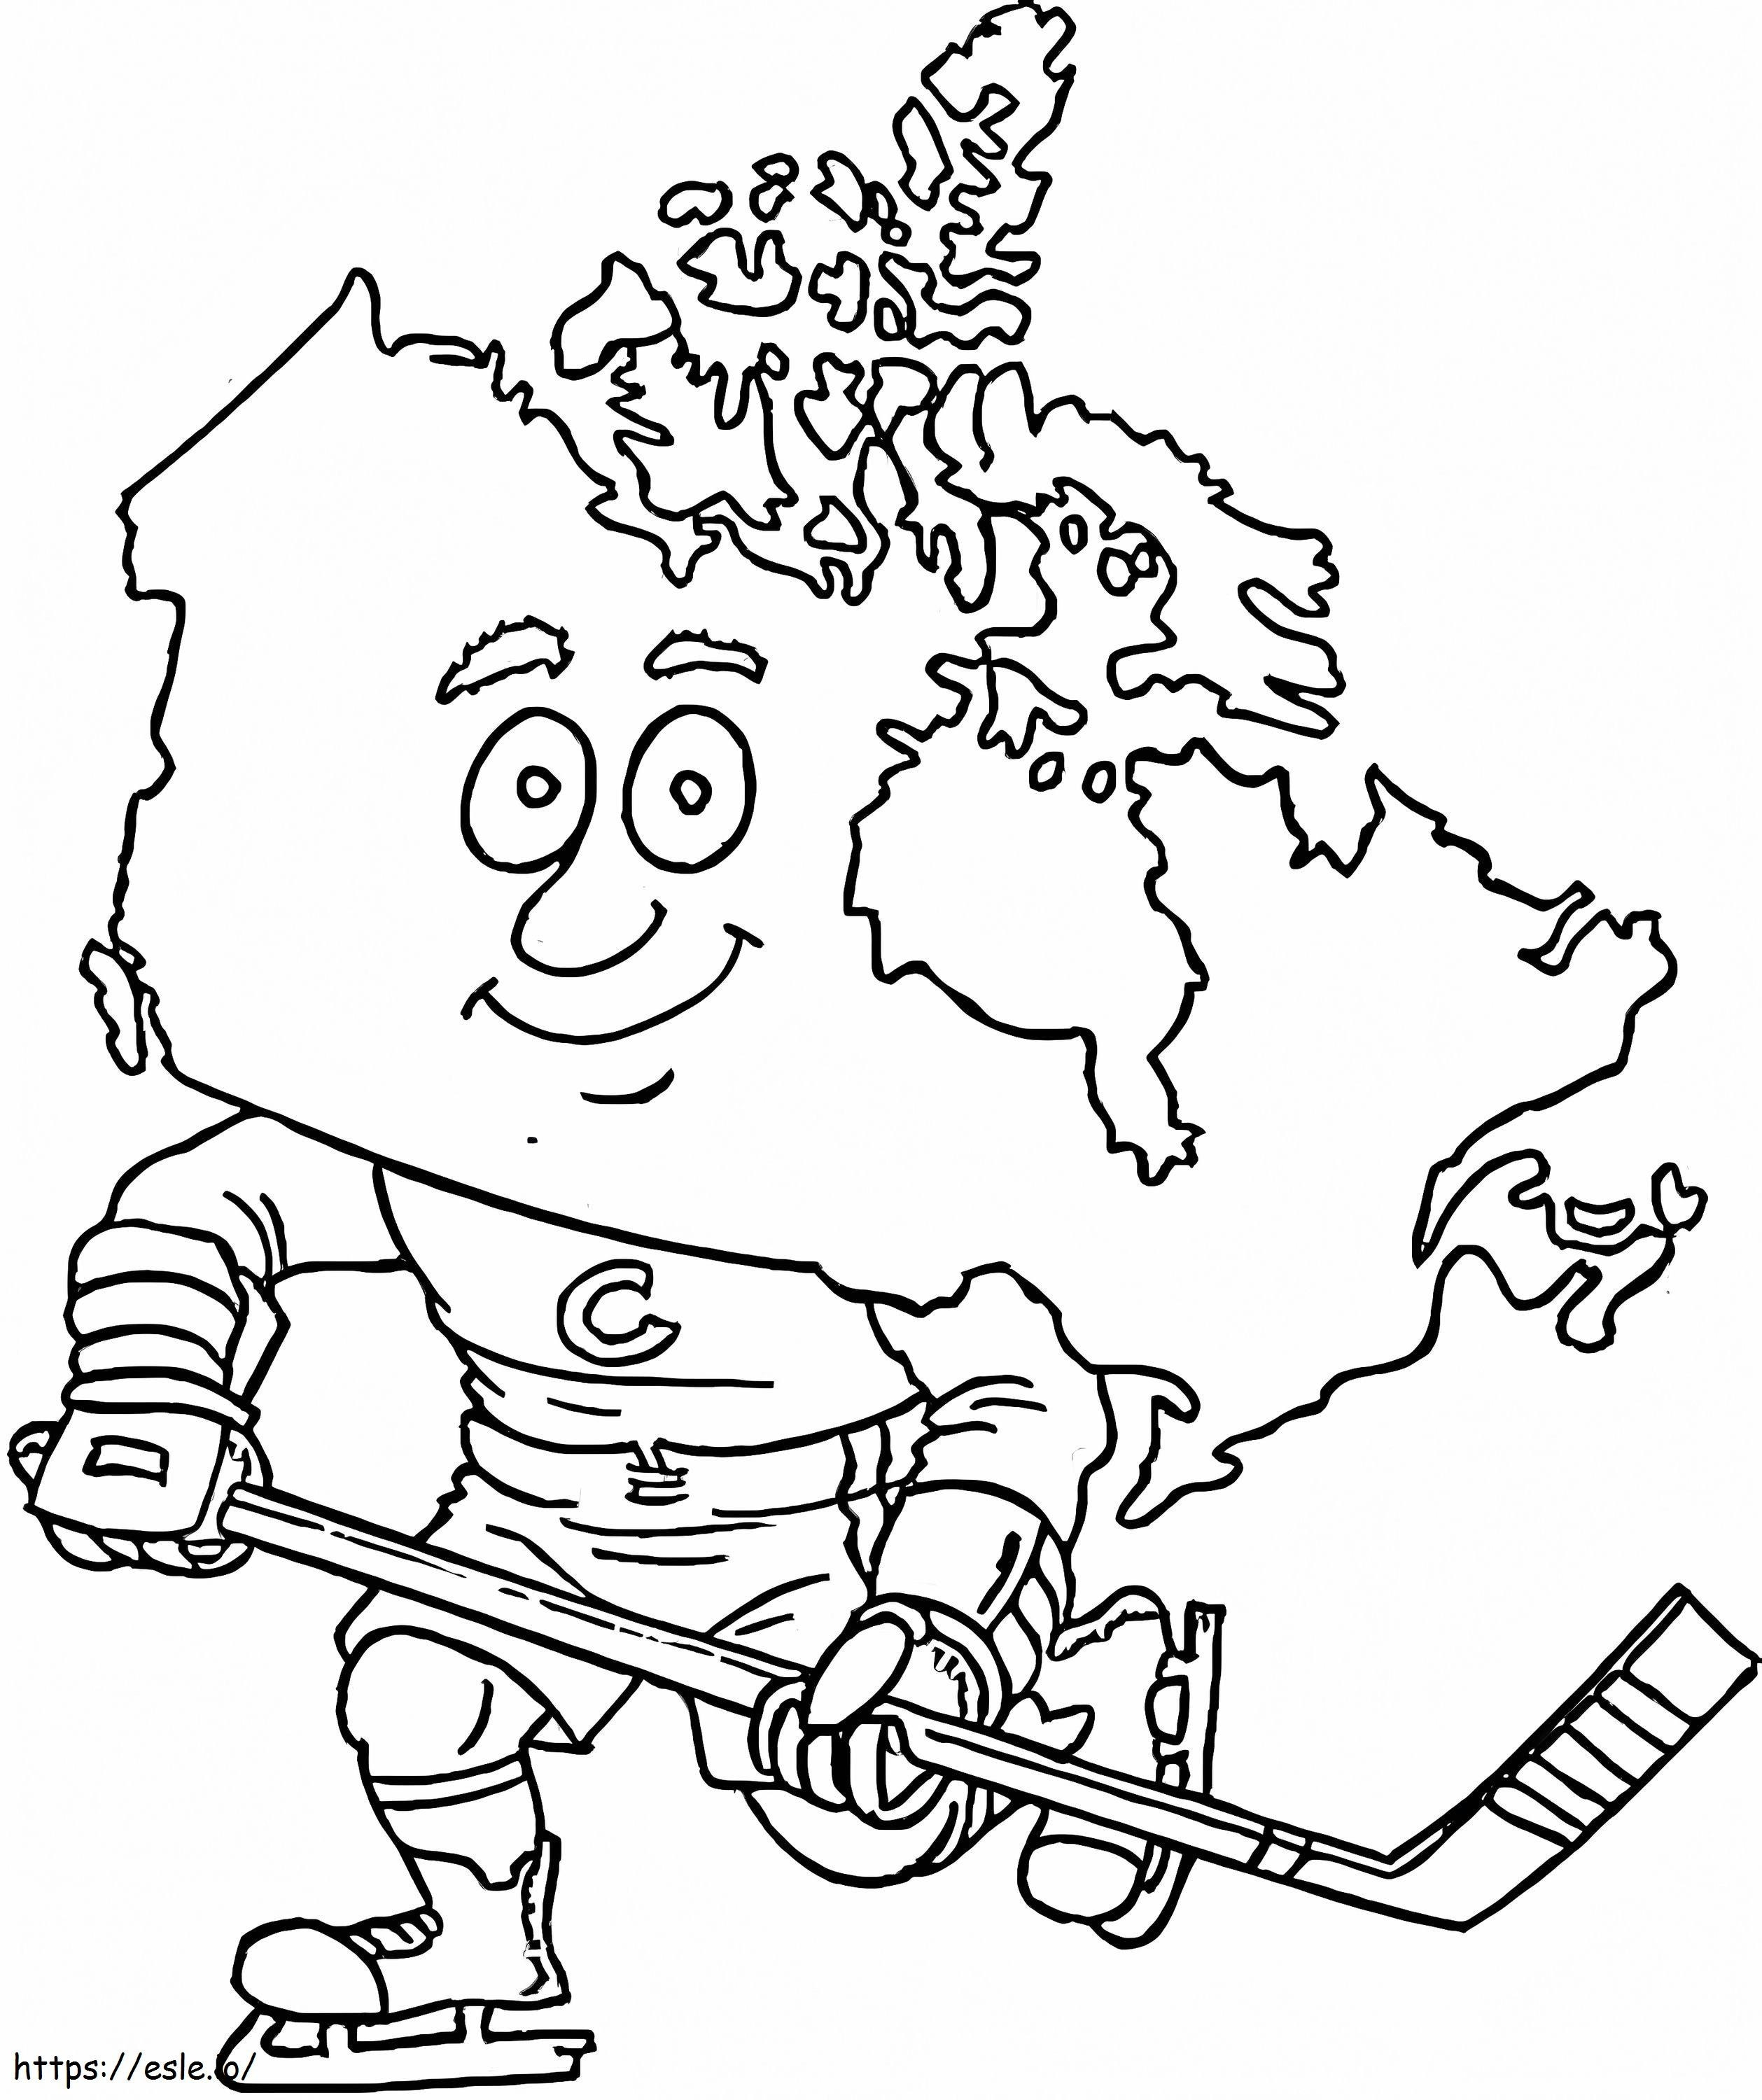 Mapa Kanady kolorowanka